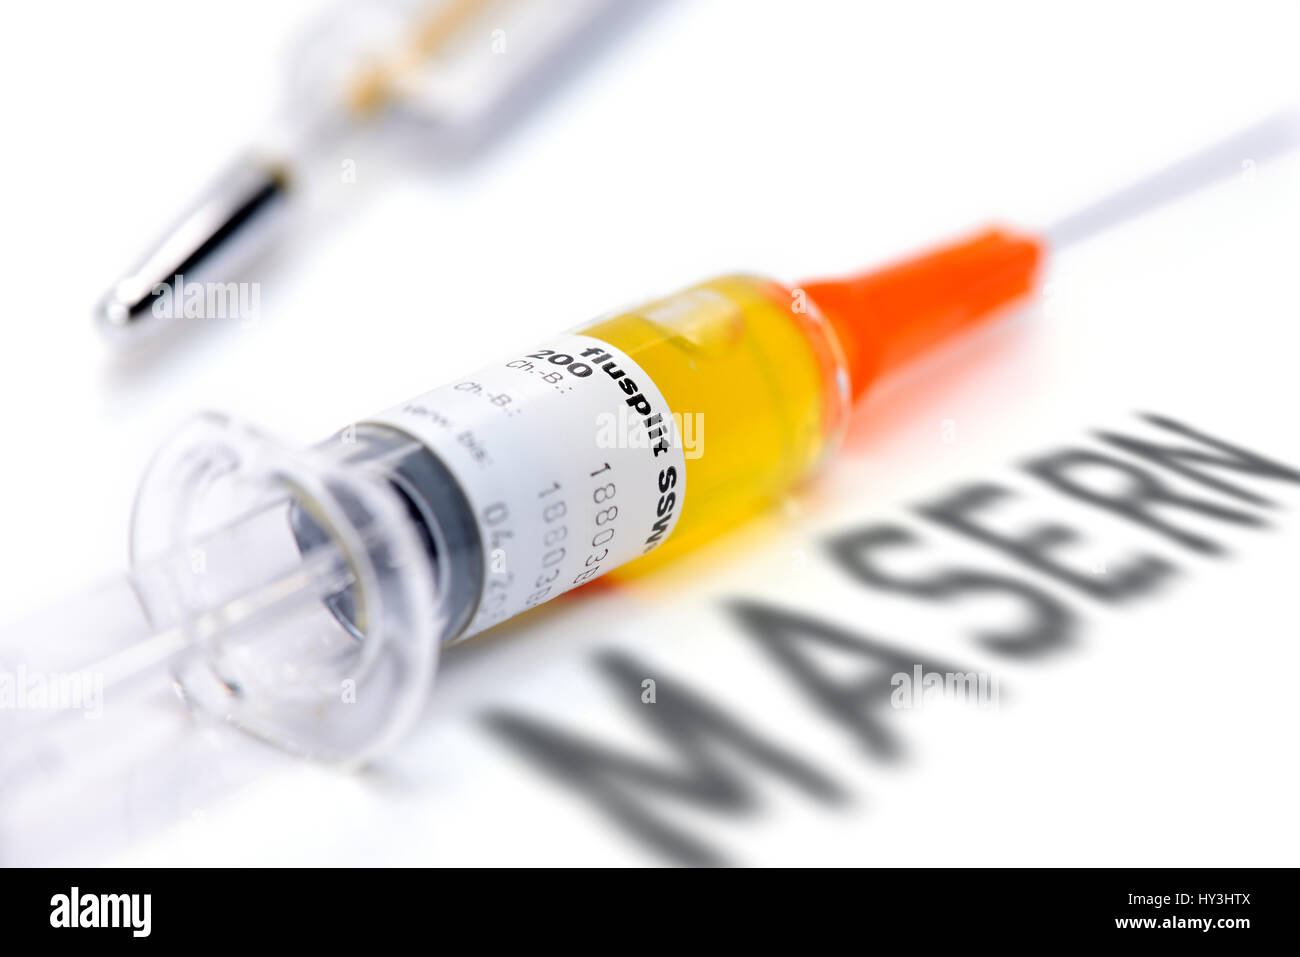 Vaccination syringe and curl stroke, vaccination against measles, Impfspritze und Masern-Schriftzug, Impfung gegen Masern Stock Photo